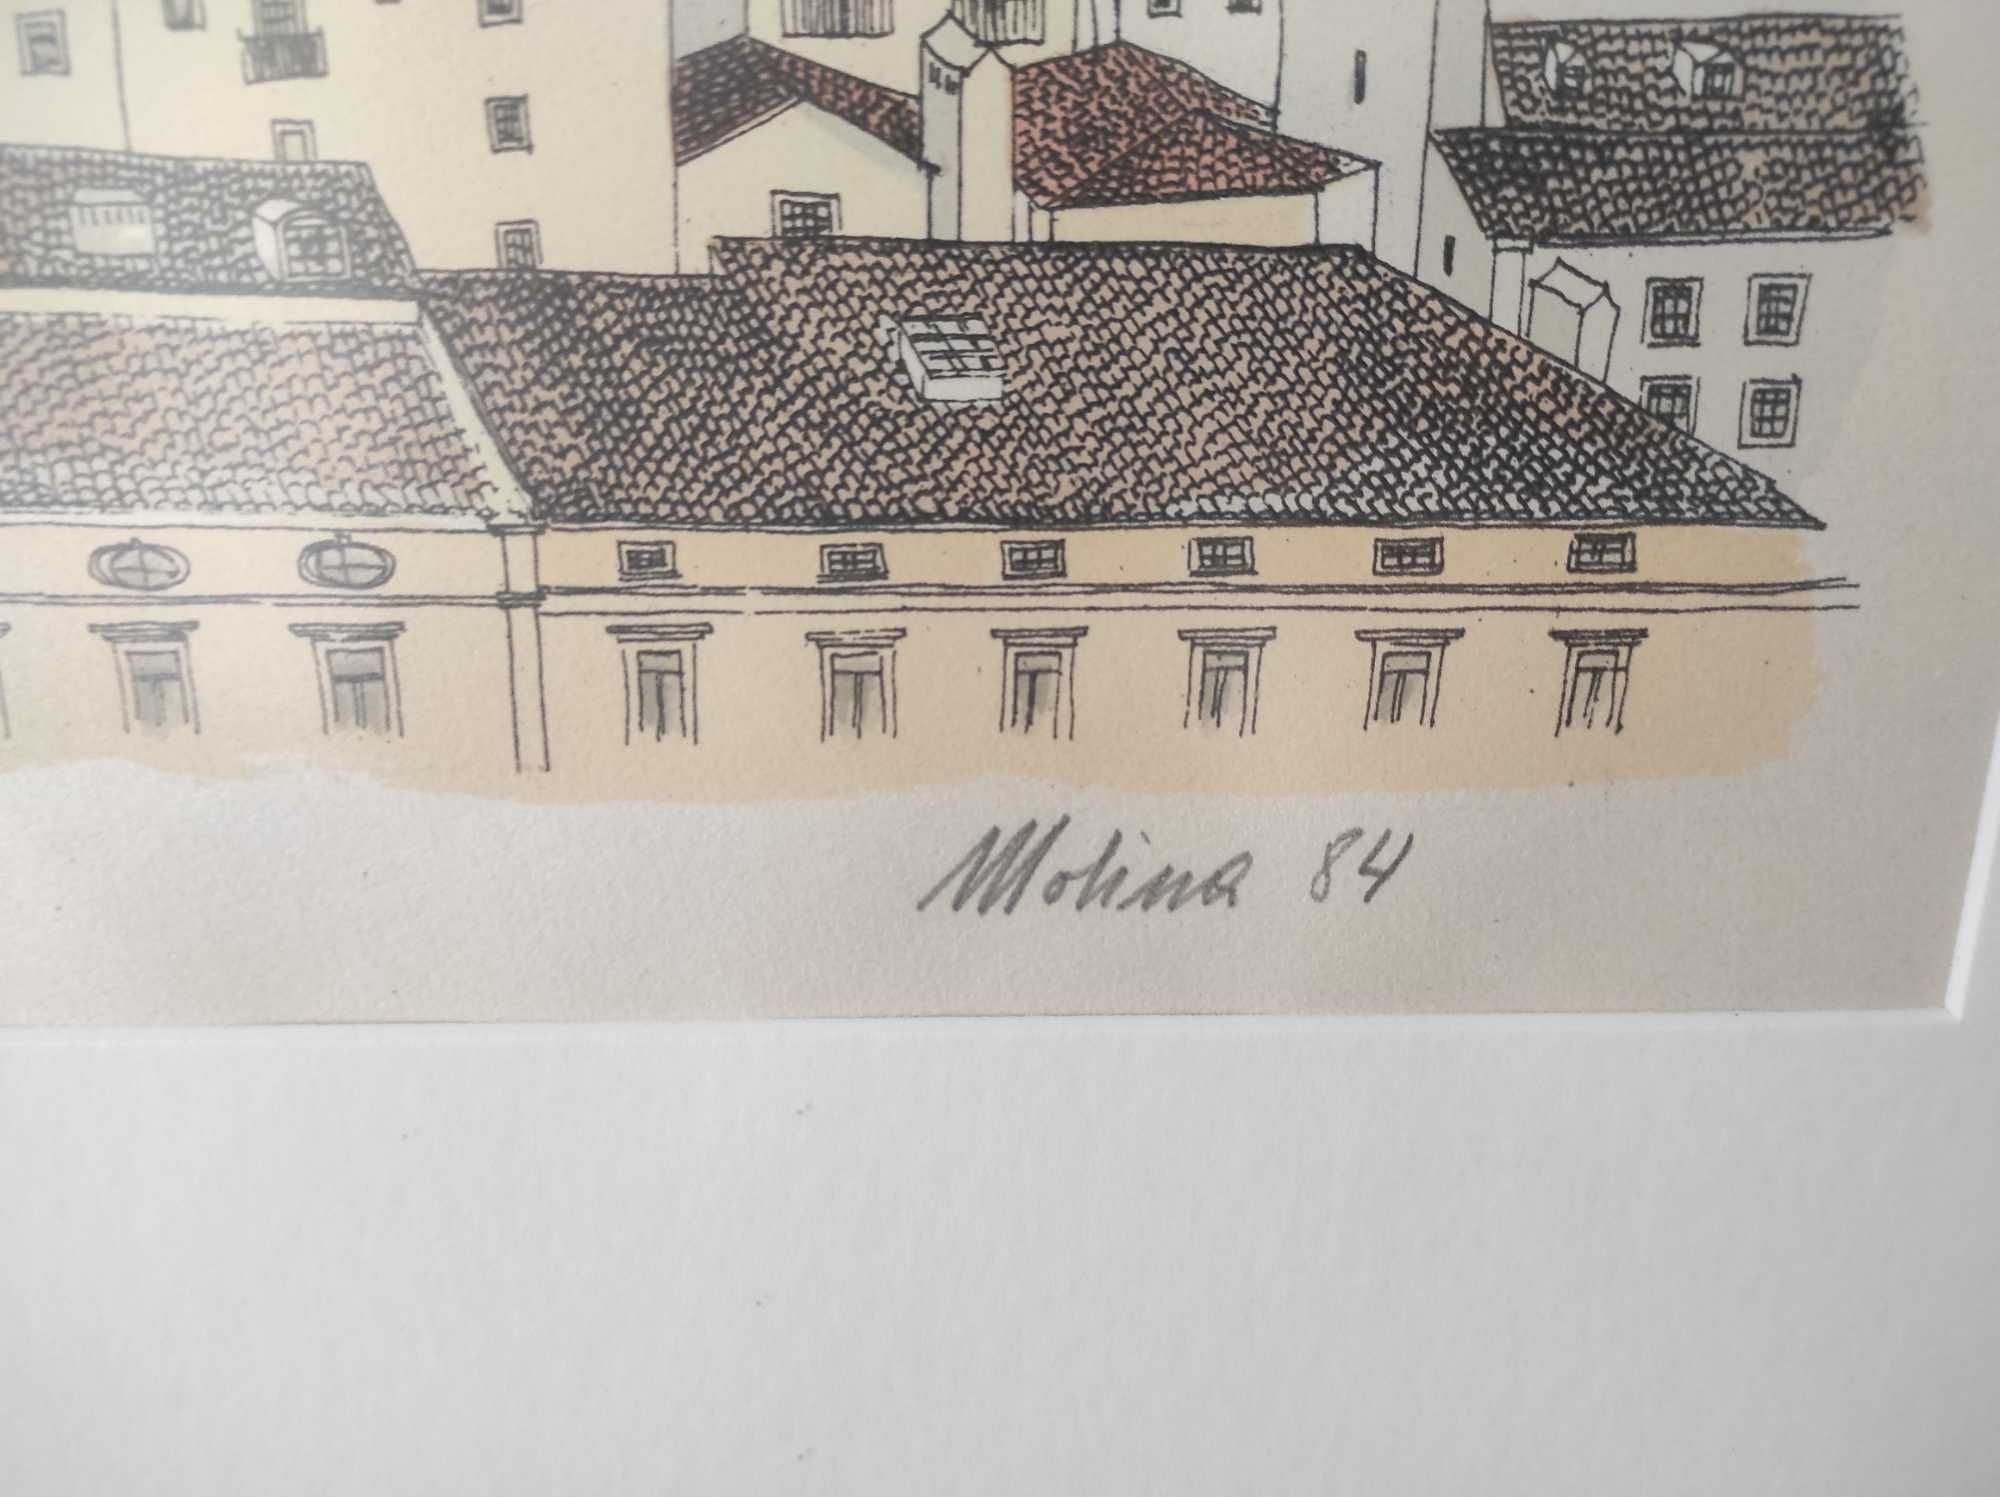 Molina - Serigrafia Lisboa